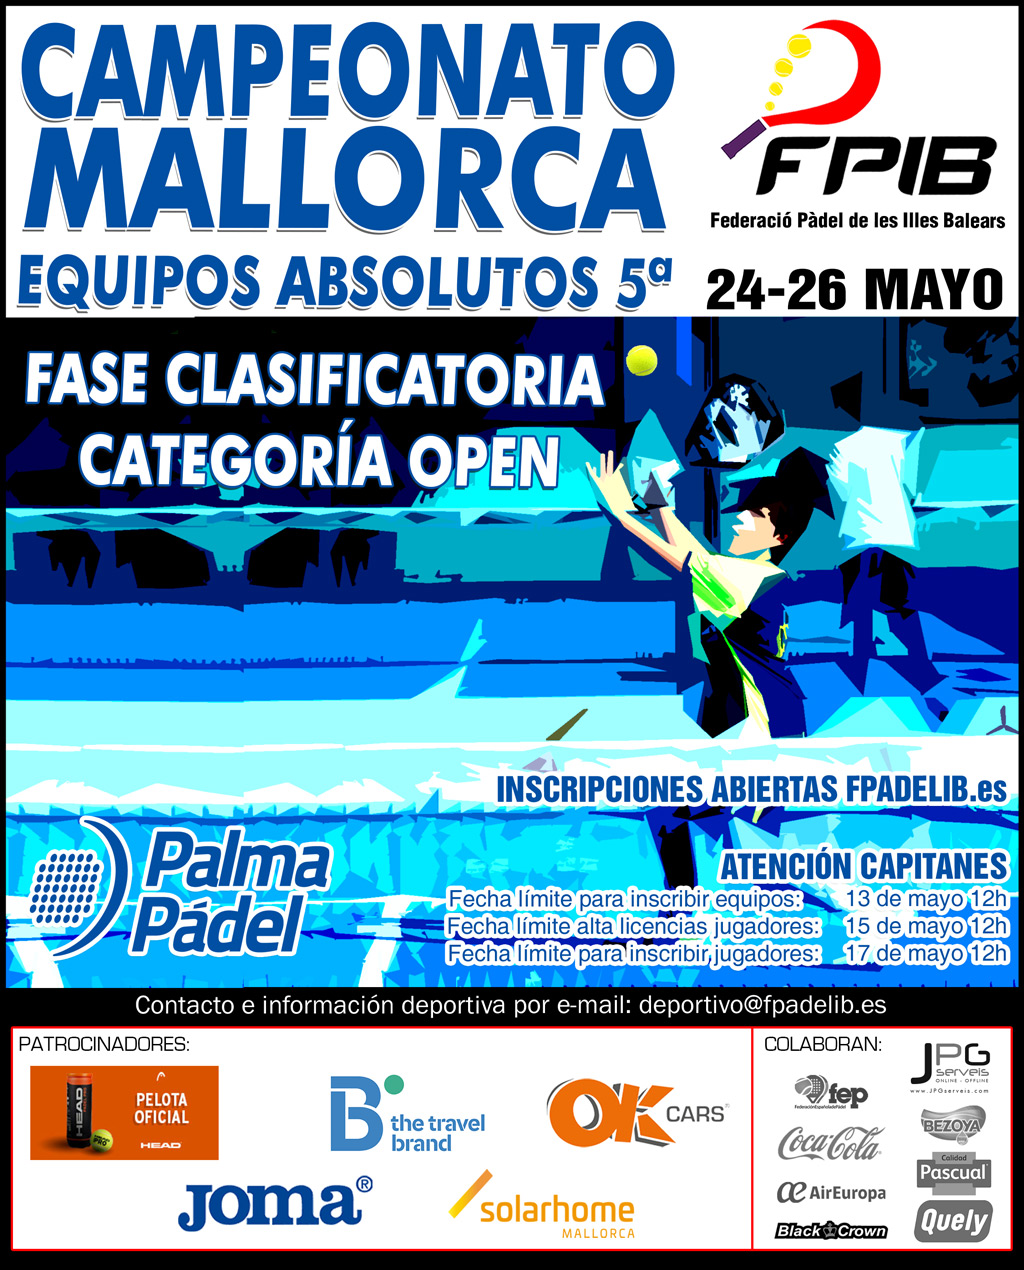 2019 Camp Mallorca Equipos Absolutos 5a